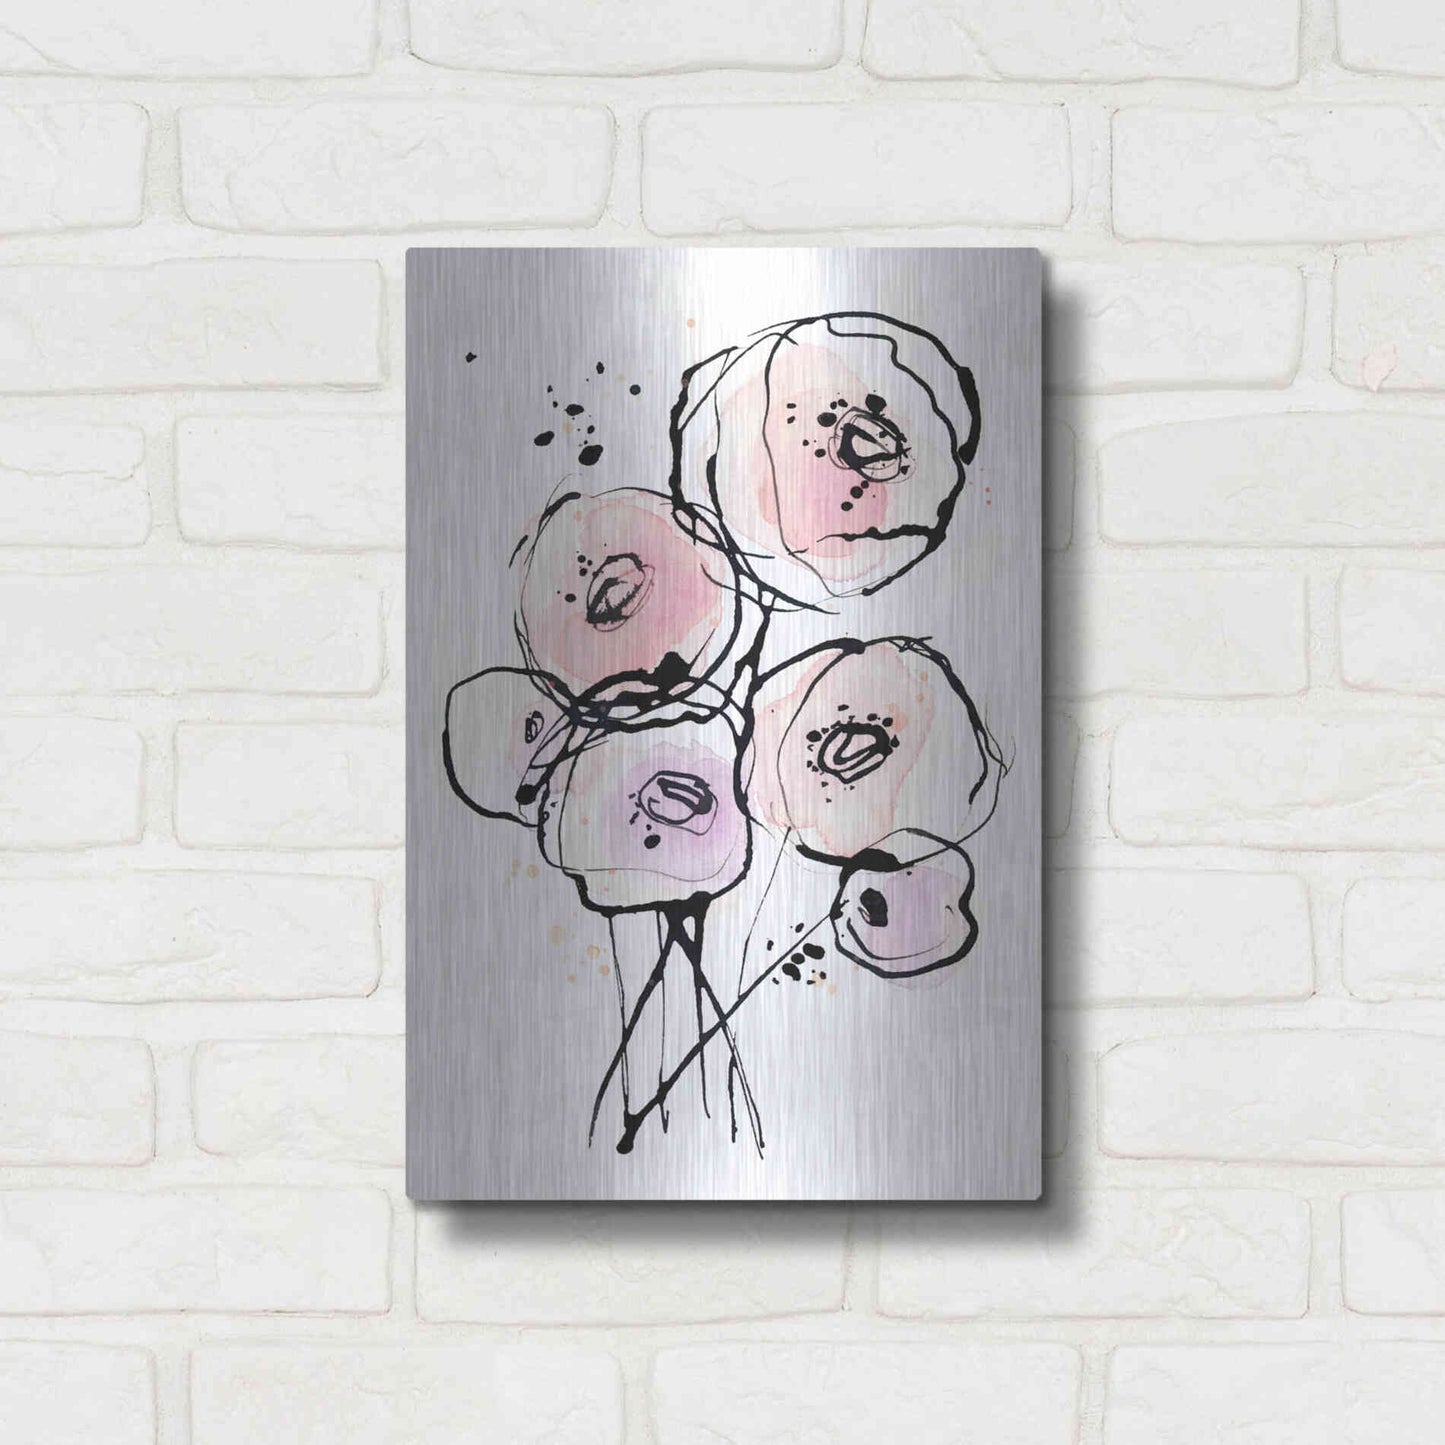 Luxe Metal Art 'Pink Mod 2' by Lesia Binkin Metal Wall Art,12x16